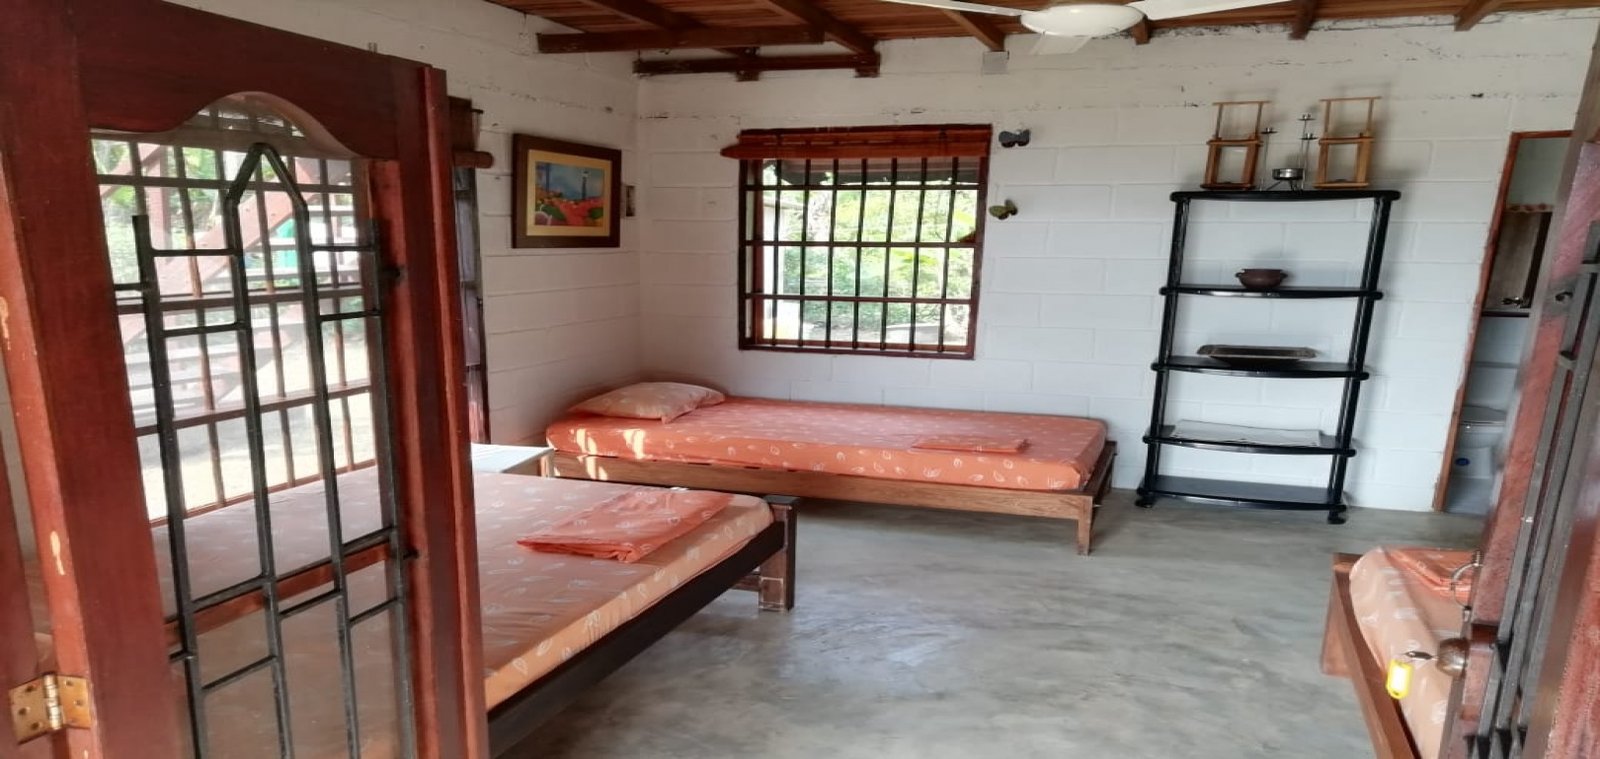 Chocó, 3 Habitaciones Habitaciones, ,Casa,Venta,1139